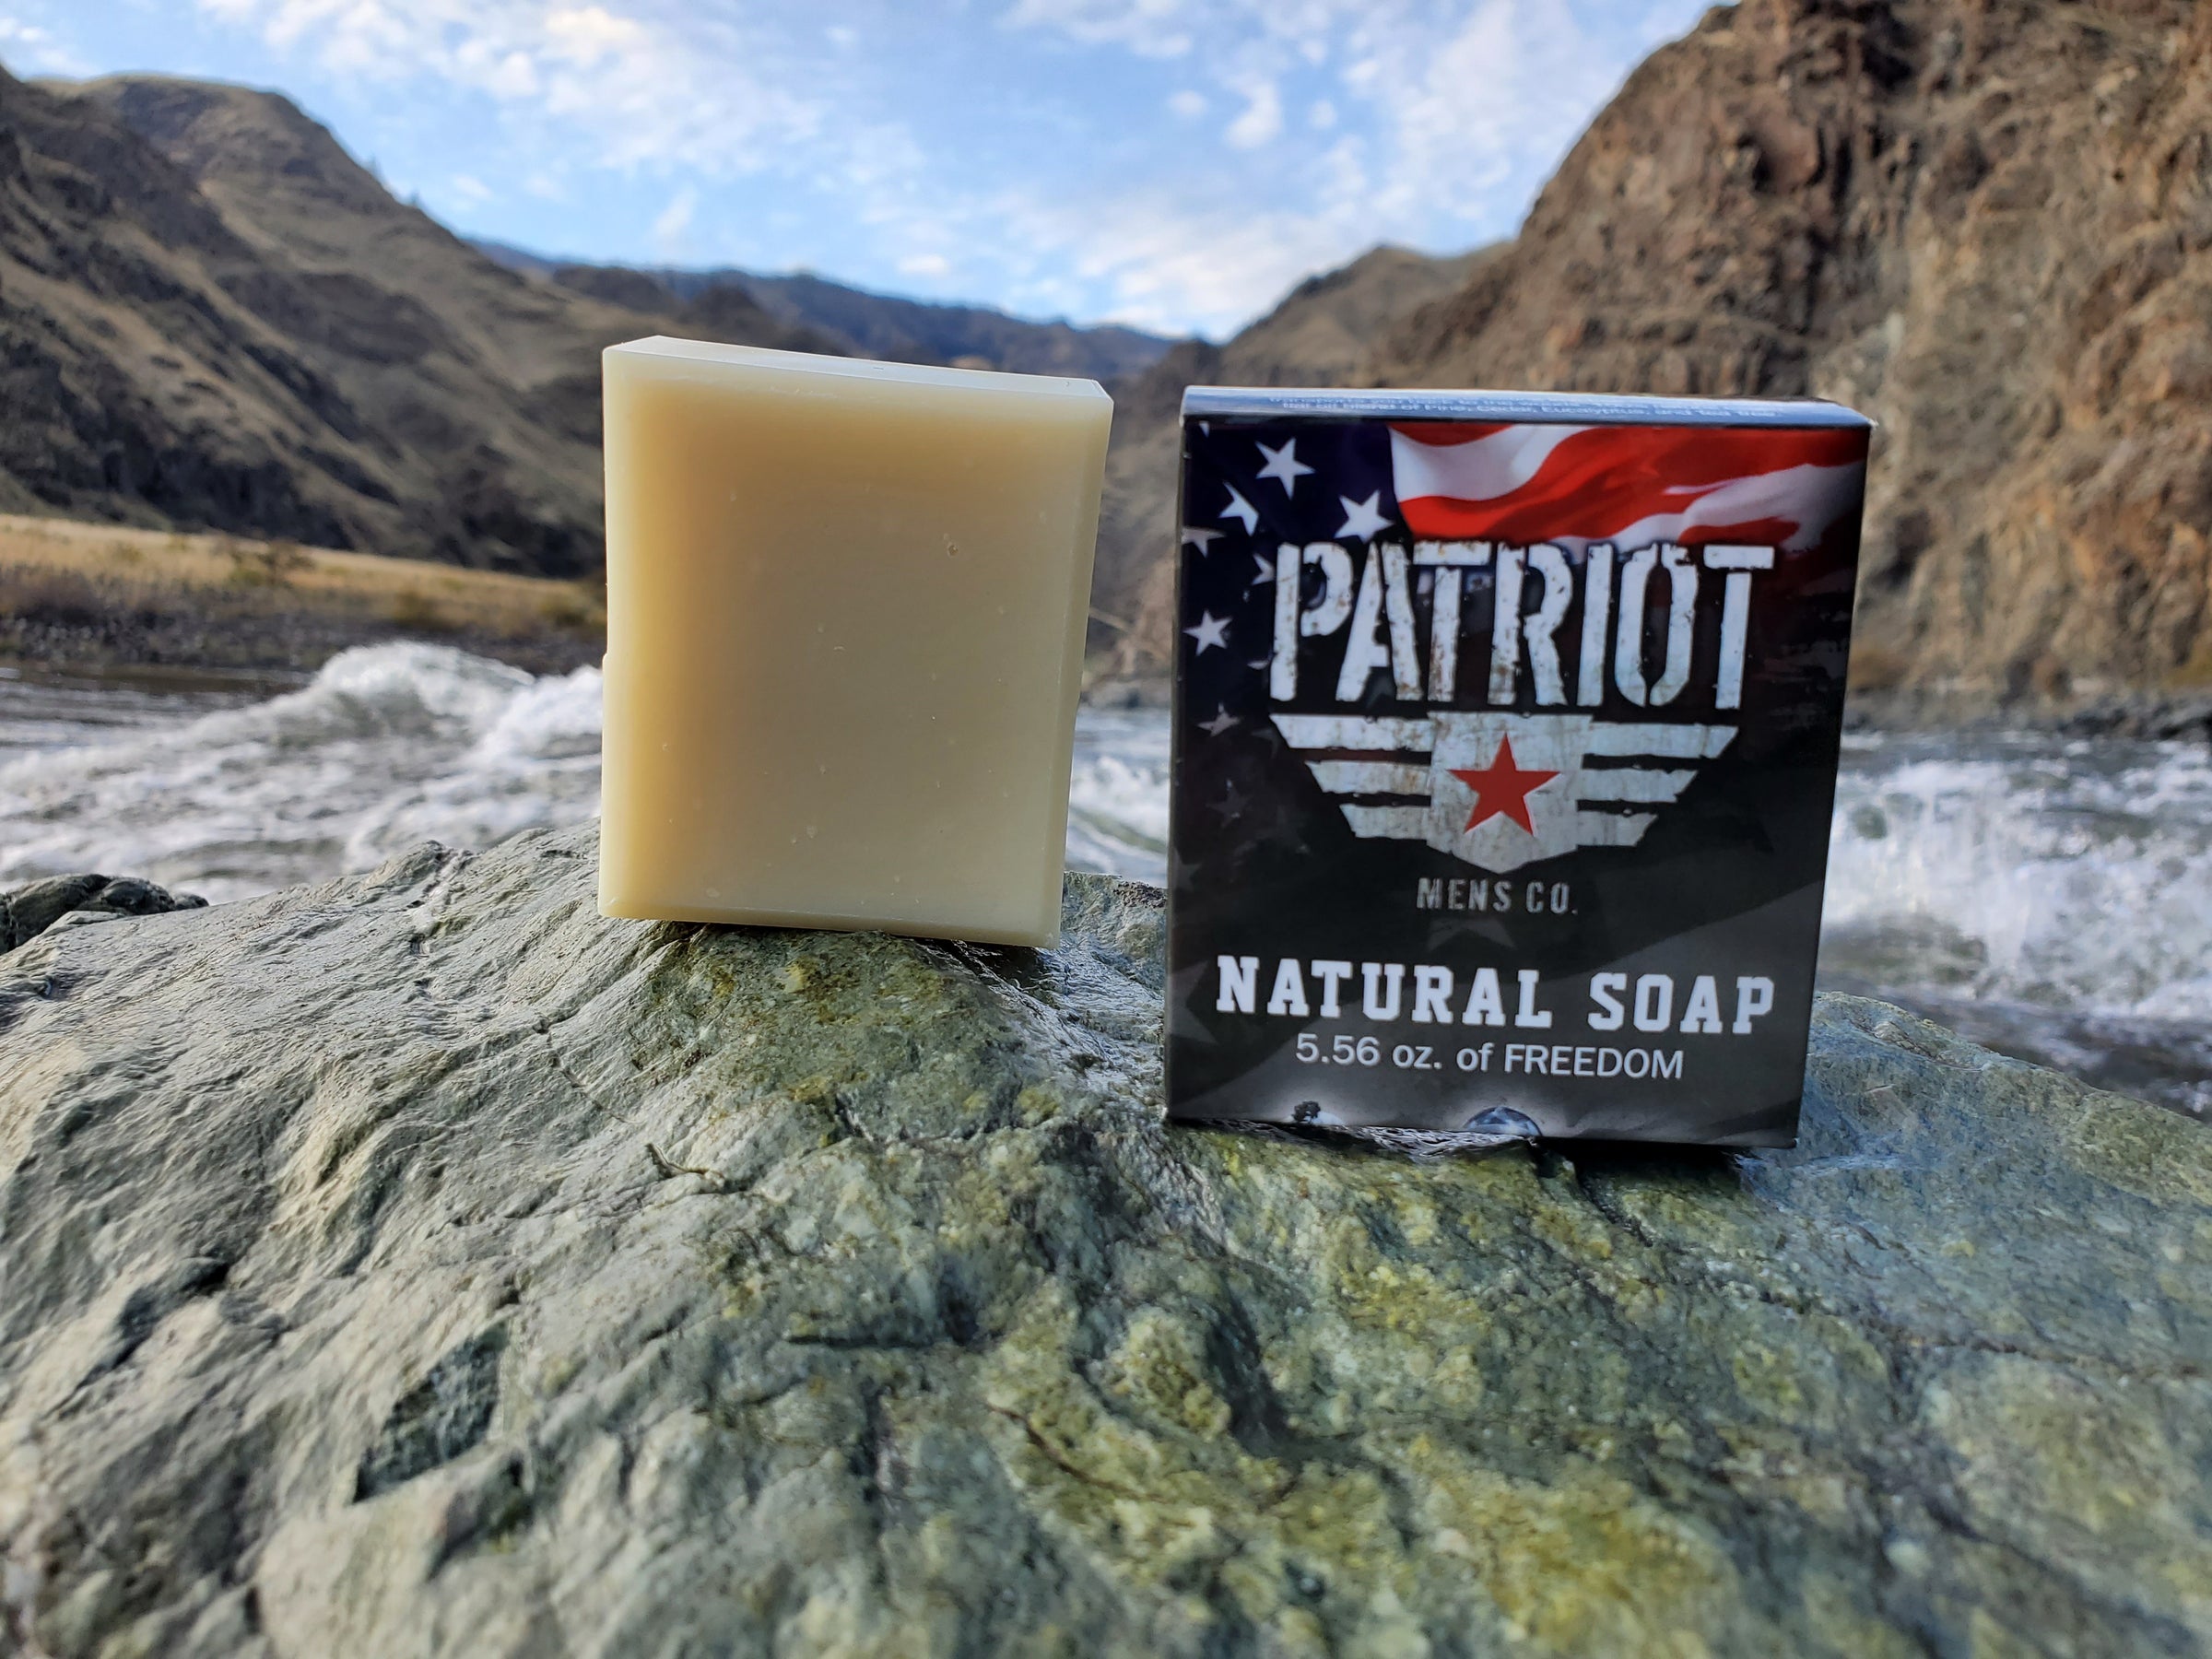 The Black Stuff Mens Natural Soap - Longer Lasting Handmade All Natural  Mens Soap - Galway Bay Rum Soap for Men